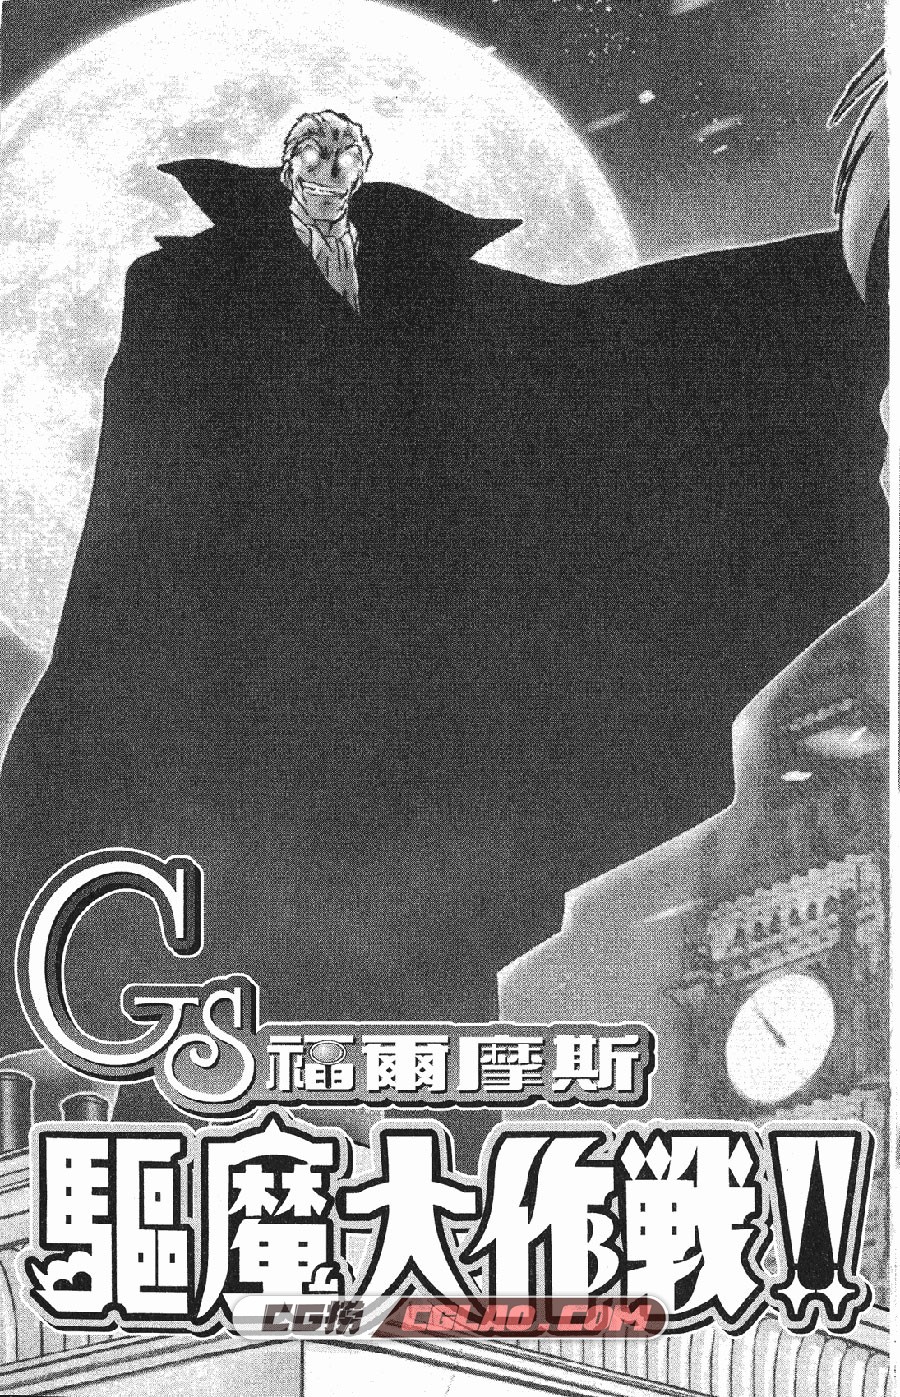 GS福尔摩斯驱魔大作战 椎名高志 全一卷 漫画完结下载百度云,_GS00-_0003.jpg